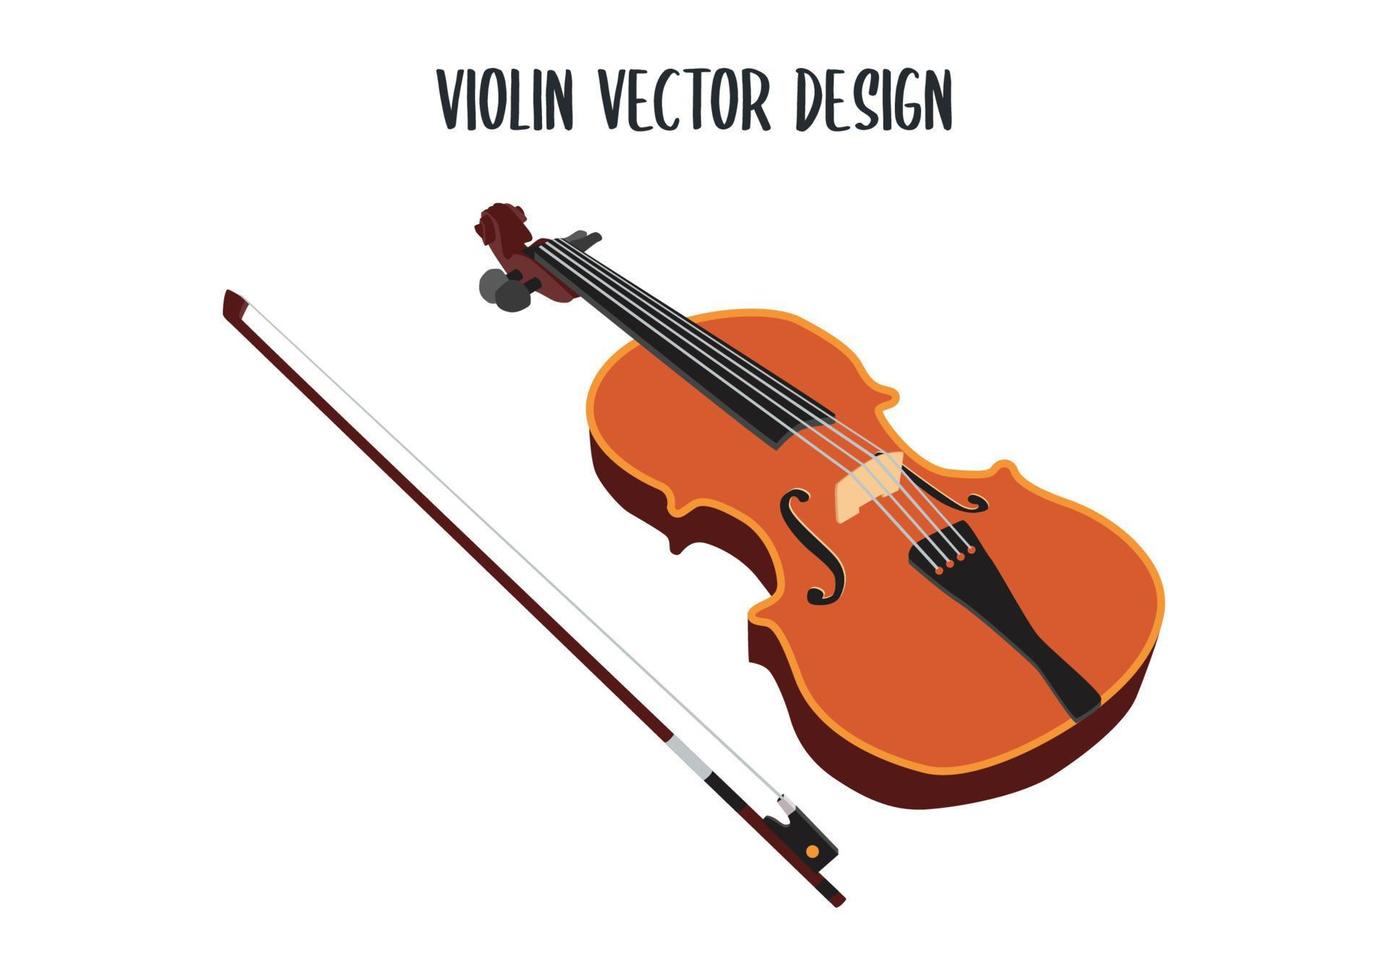 desenho vetorial de violino de madeira. ilustração em vetor violino clássico isolada no fundo branco. instrumento musical de cordas. clipart de violino